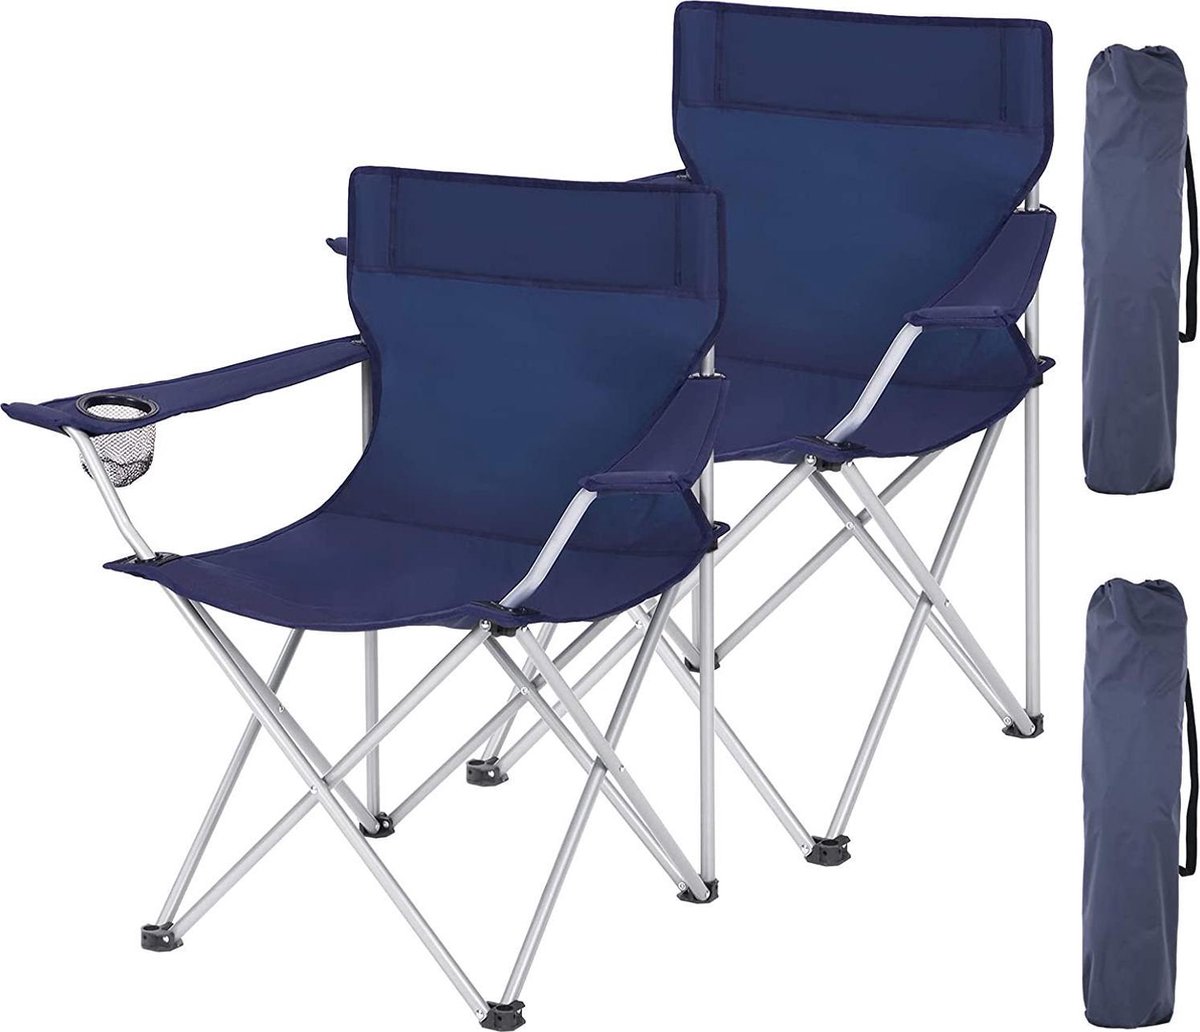 Set van 2 opvouwbare Campingstoelen, Klapstoelen voor buiten, comfortabel, met armleuningen en bekerhouders, stabiel frame, draagvermogen 120 kg - Blauw (5400943014785)